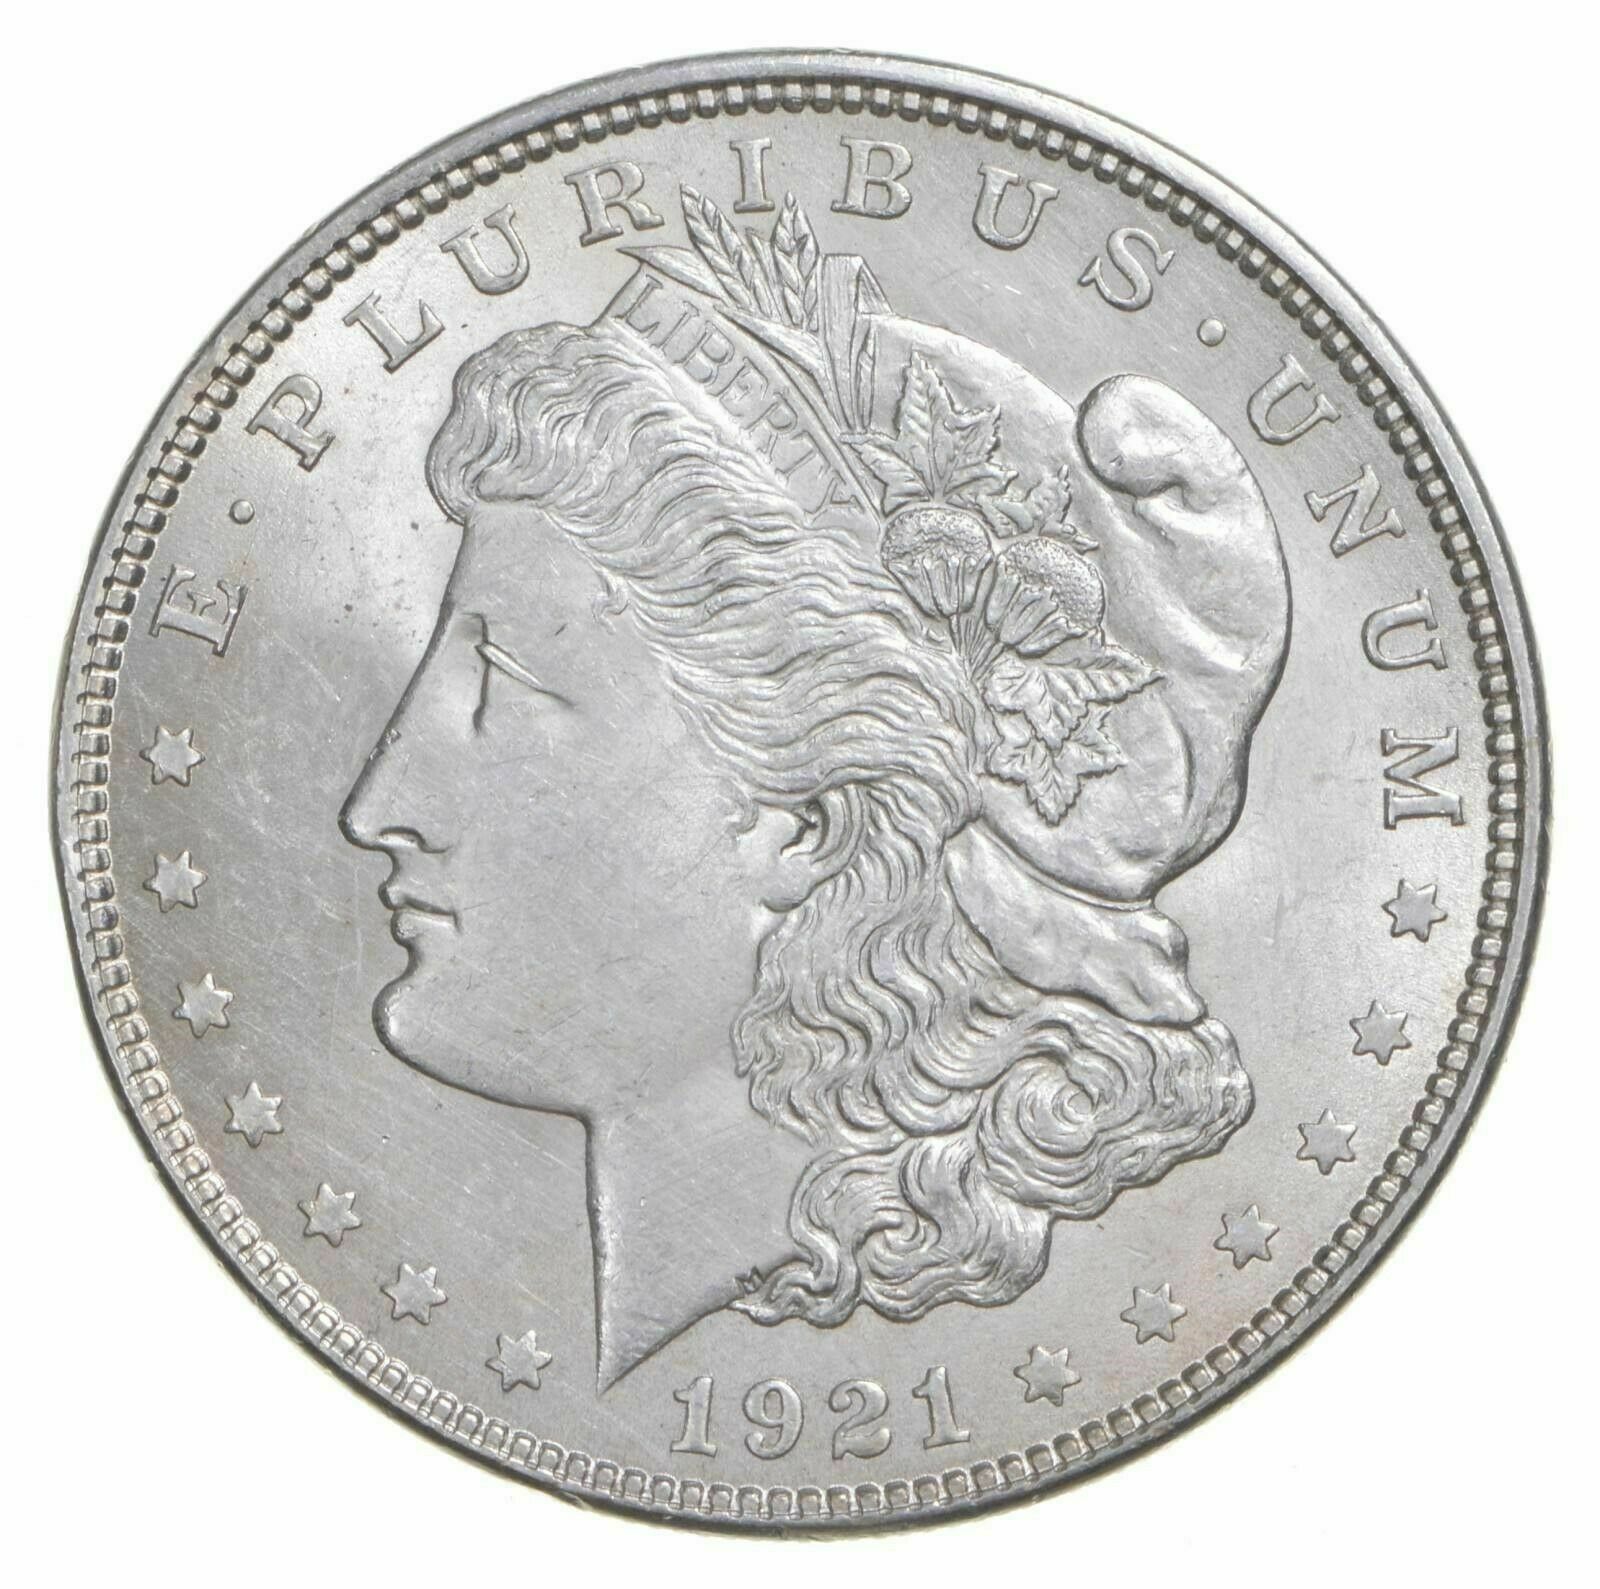 (1) Brilliant Au/uncirculated $1 1921 Morgan Us Silver Dollar 90% Bu Bulk Lot